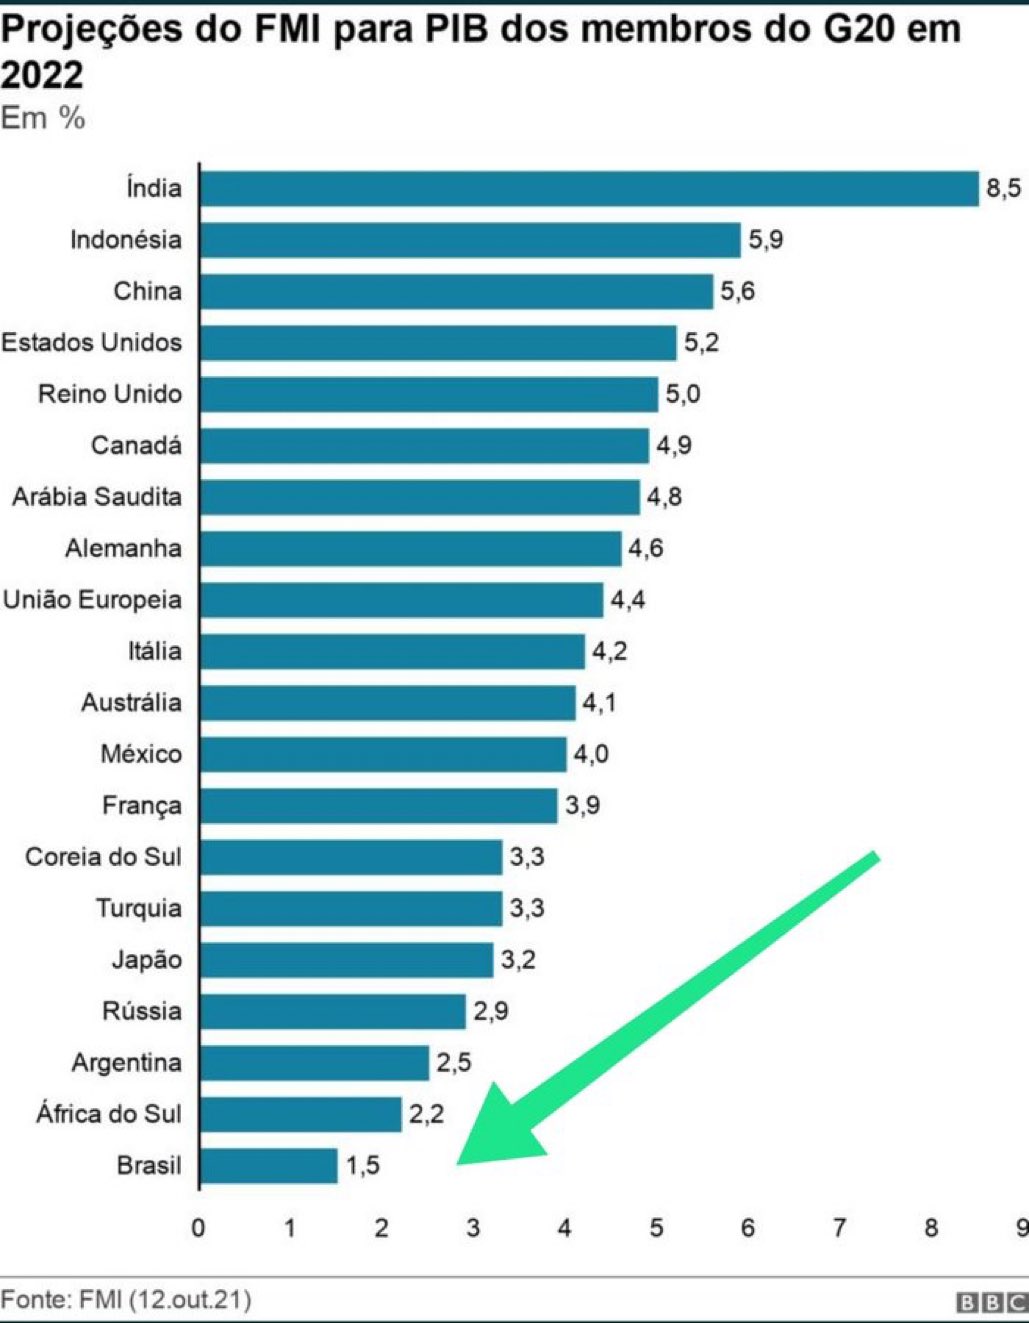 Ranking de projeção de crescimento do PIB de todos os países do G20 em 22, pelo FMI. Brasil é o último.